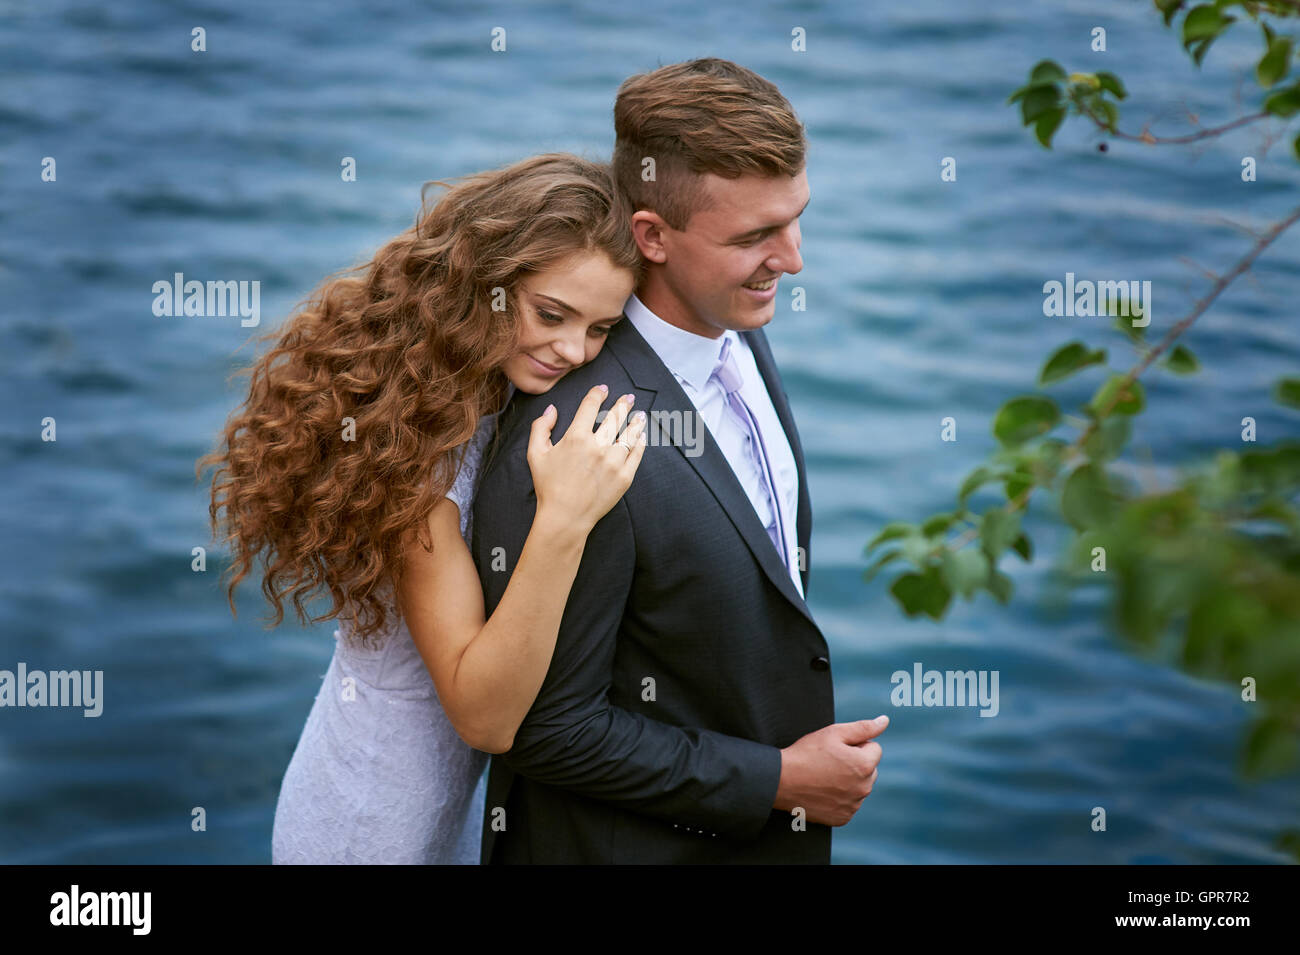 junge Bräutigam und Braut umarmt auf dem Hintergrund des Sees Stockfoto